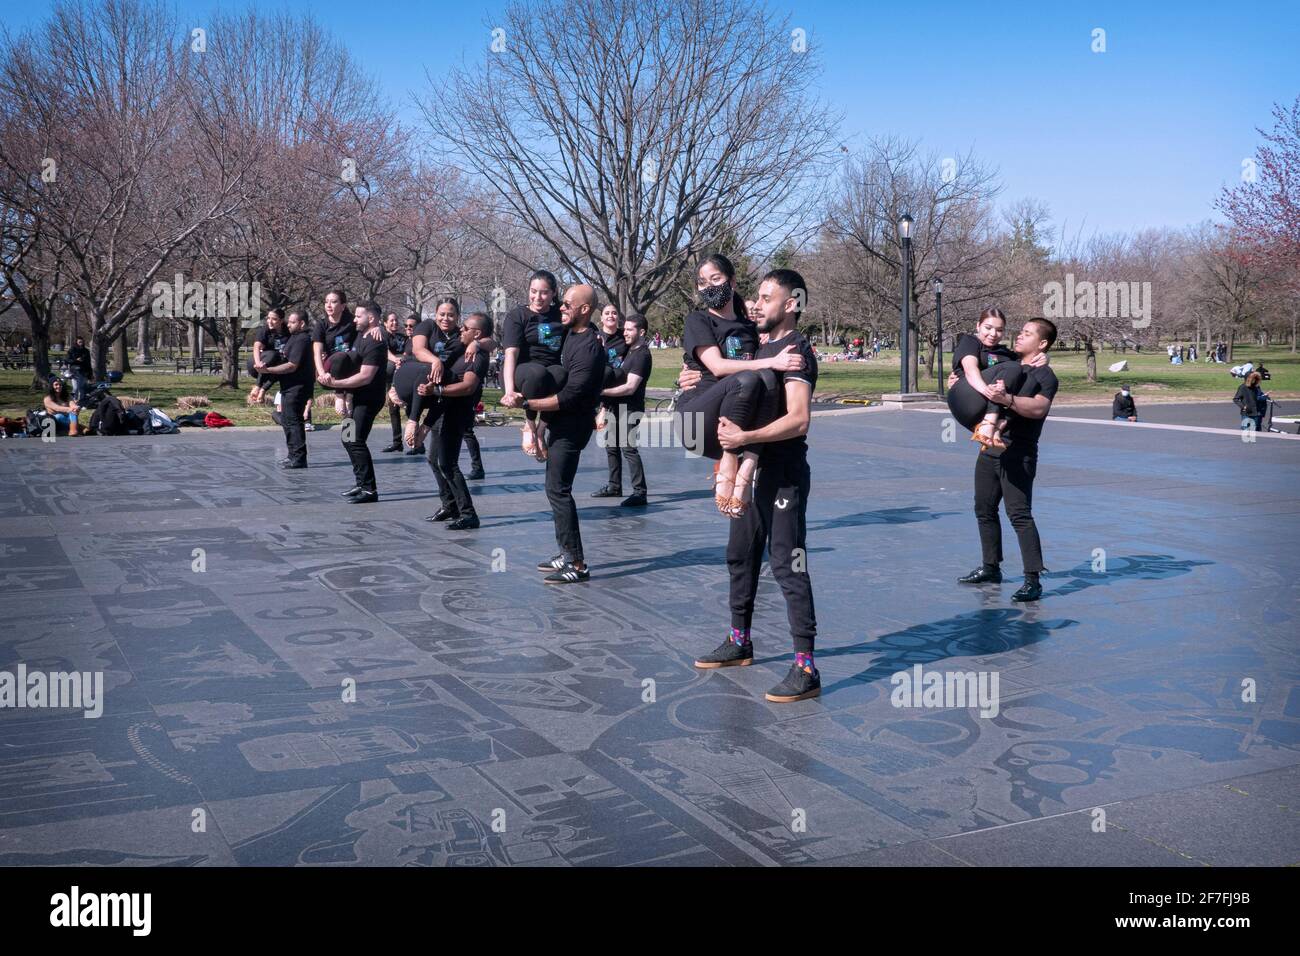 Eine Gruppe vom Cali Salsa Pal Mundo Tanzstudio tritt öffentlich auf, um ihre Schule zu publizieren. Im Flushing Meadows Corona Park in Queens, NYC. Stockfoto